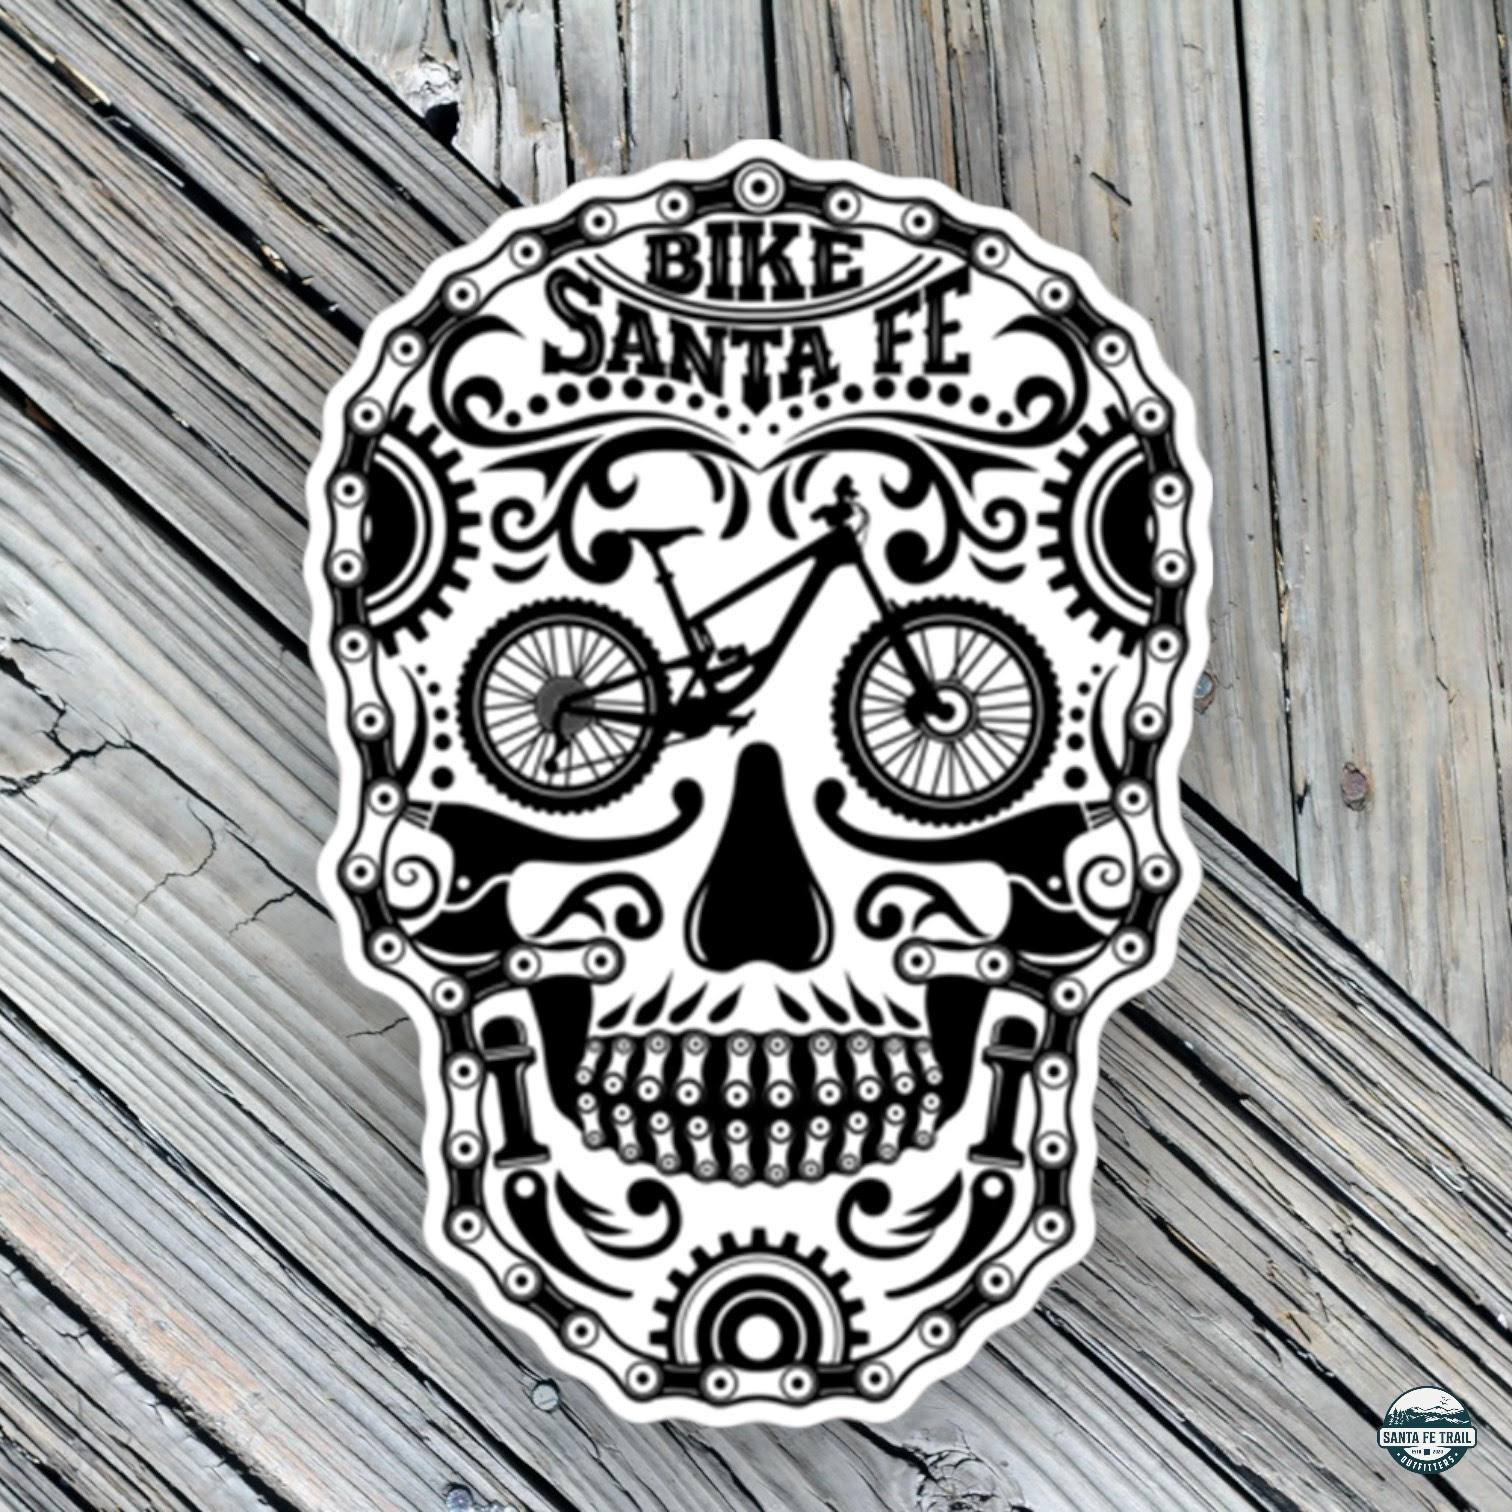 Bike Santa Fe Sticker